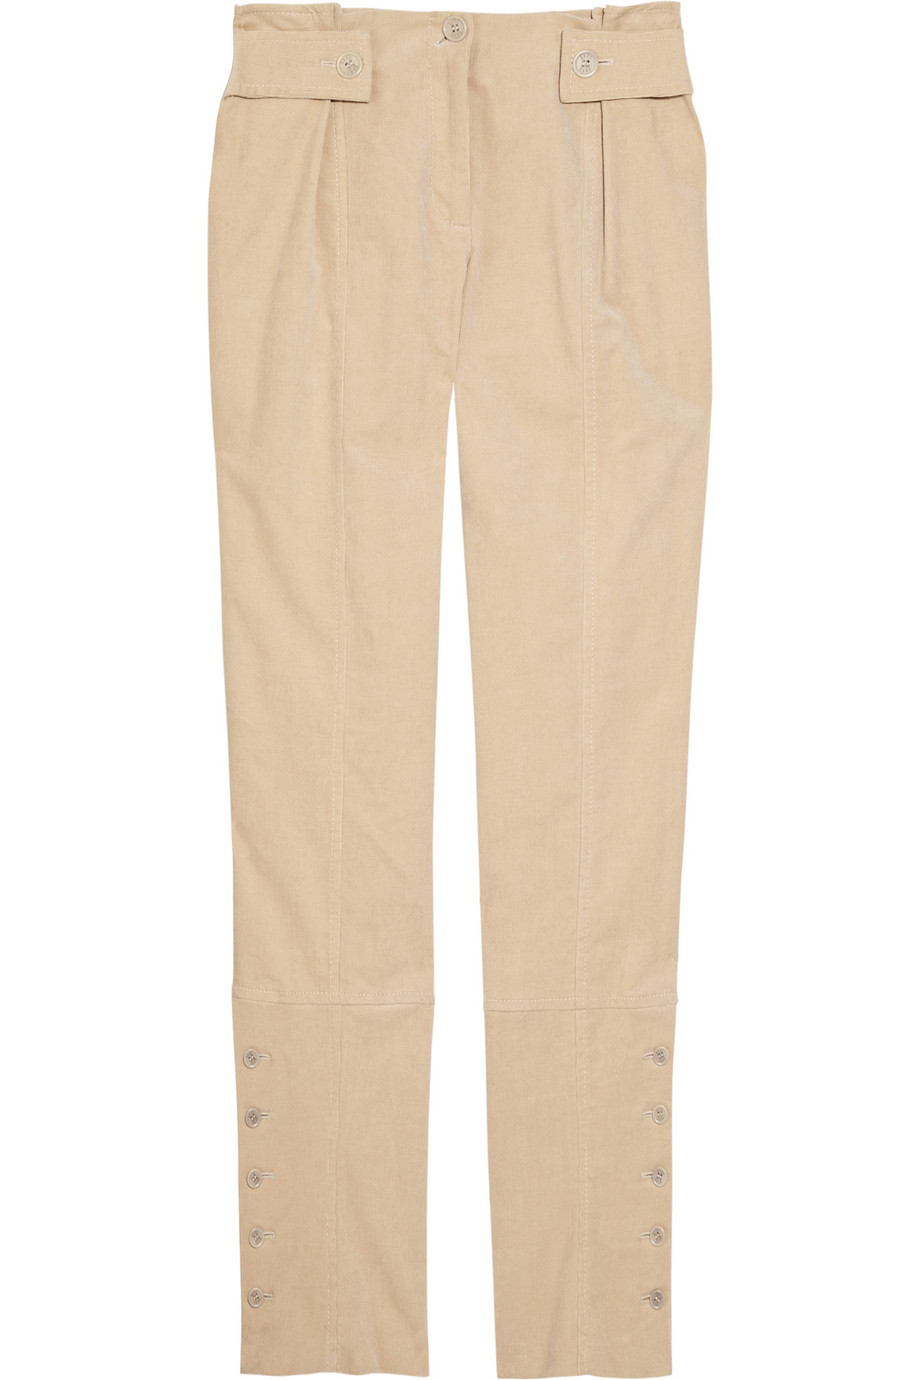 Daks High-waisted Corduroy Pants in Beige (brown) | Lyst